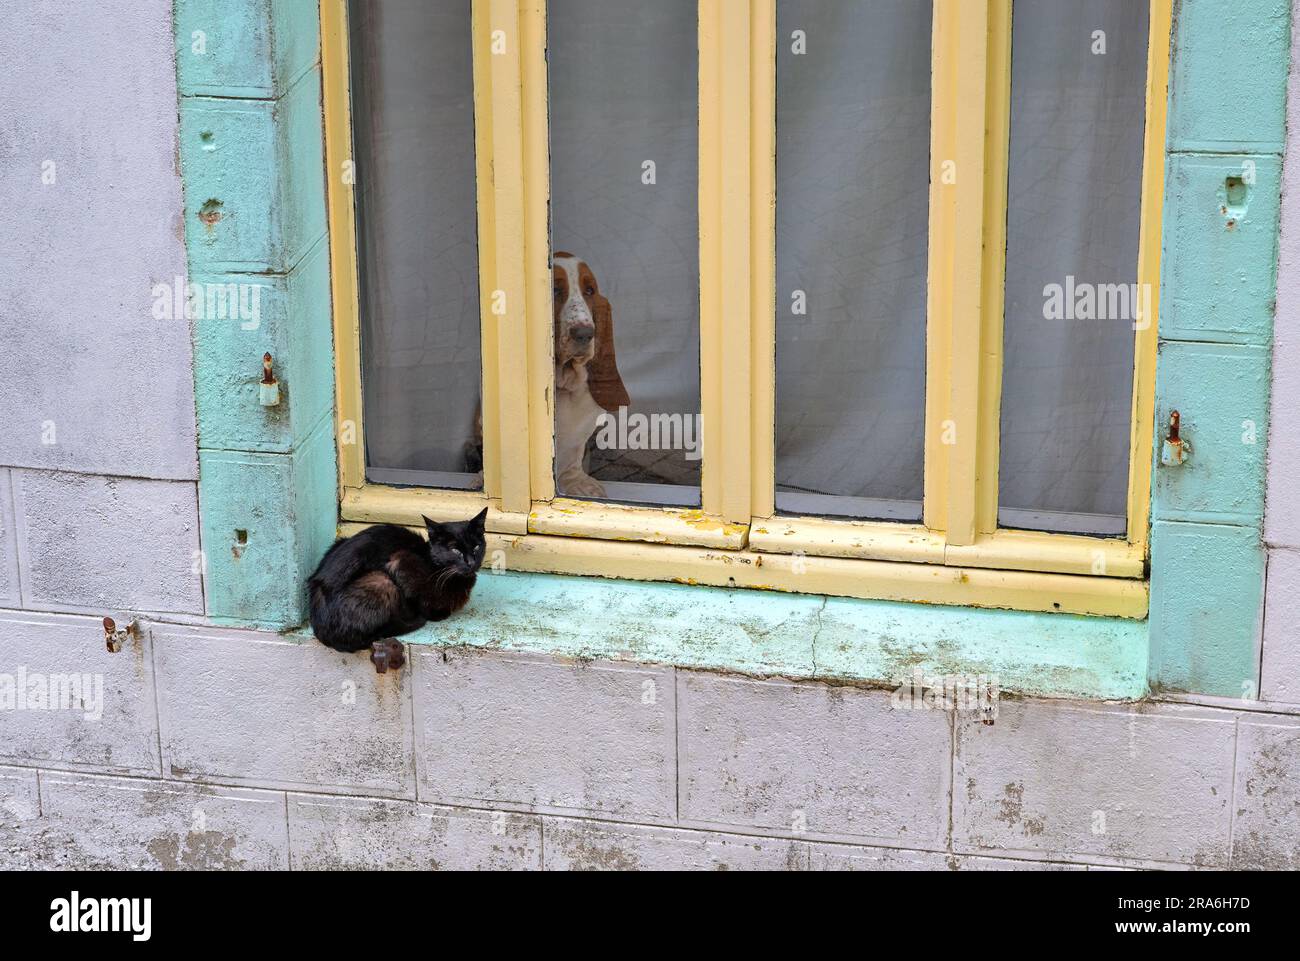 Un chat noir est assis devant une fenêtre et un chien (Basset Hound) est assis derrière la fenêtre Banque D'Images